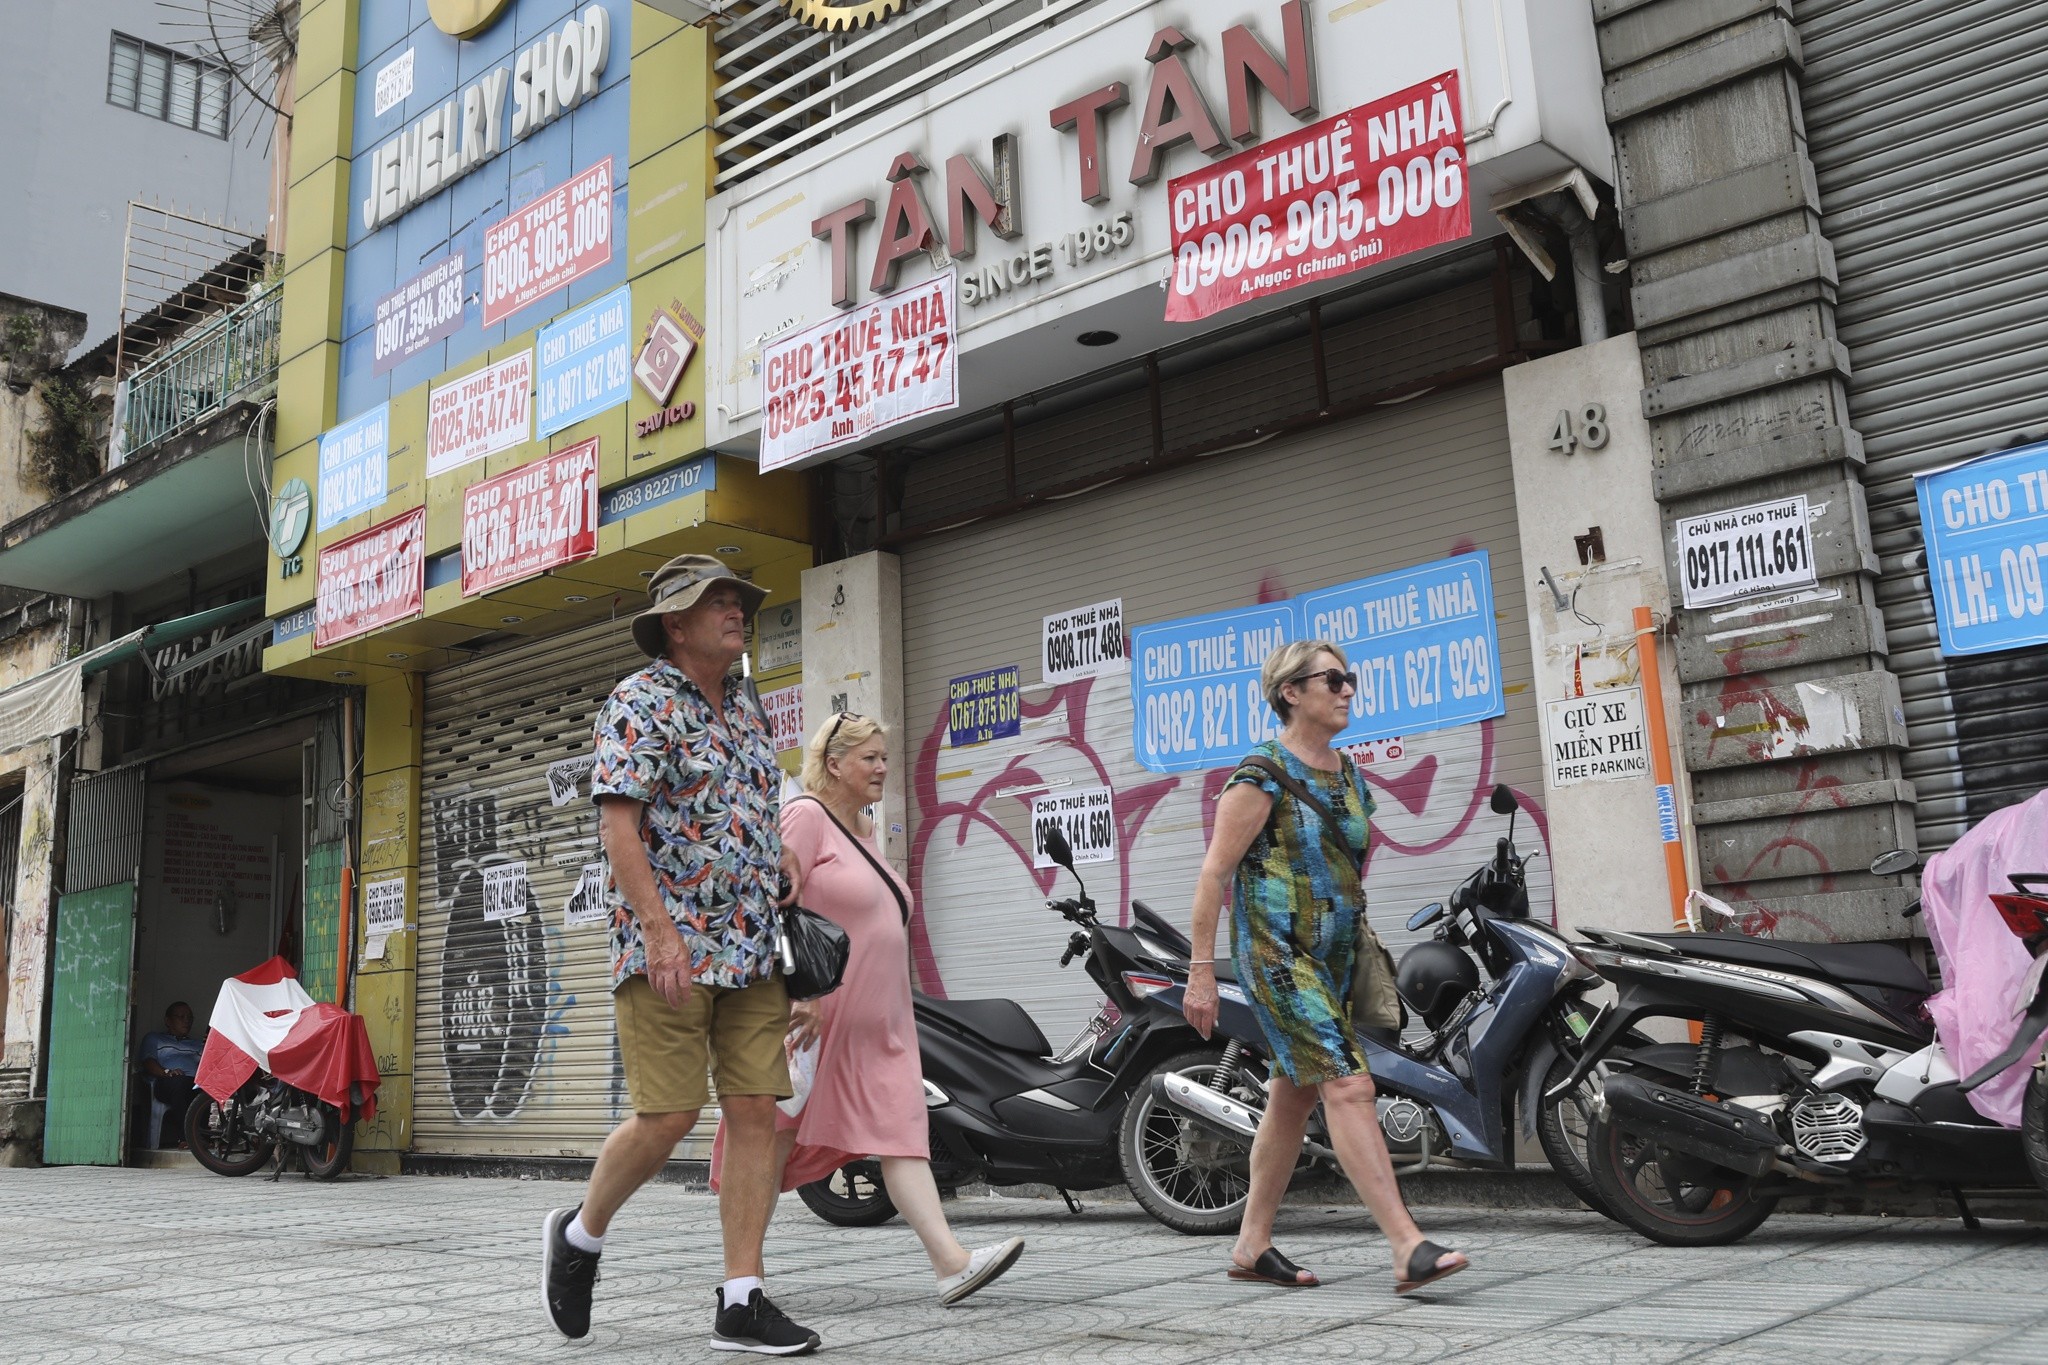 
Thị trường mặt bằng bán lẻ TP Hồ Chí Minh đang có nhiều diễn biến tích cực
